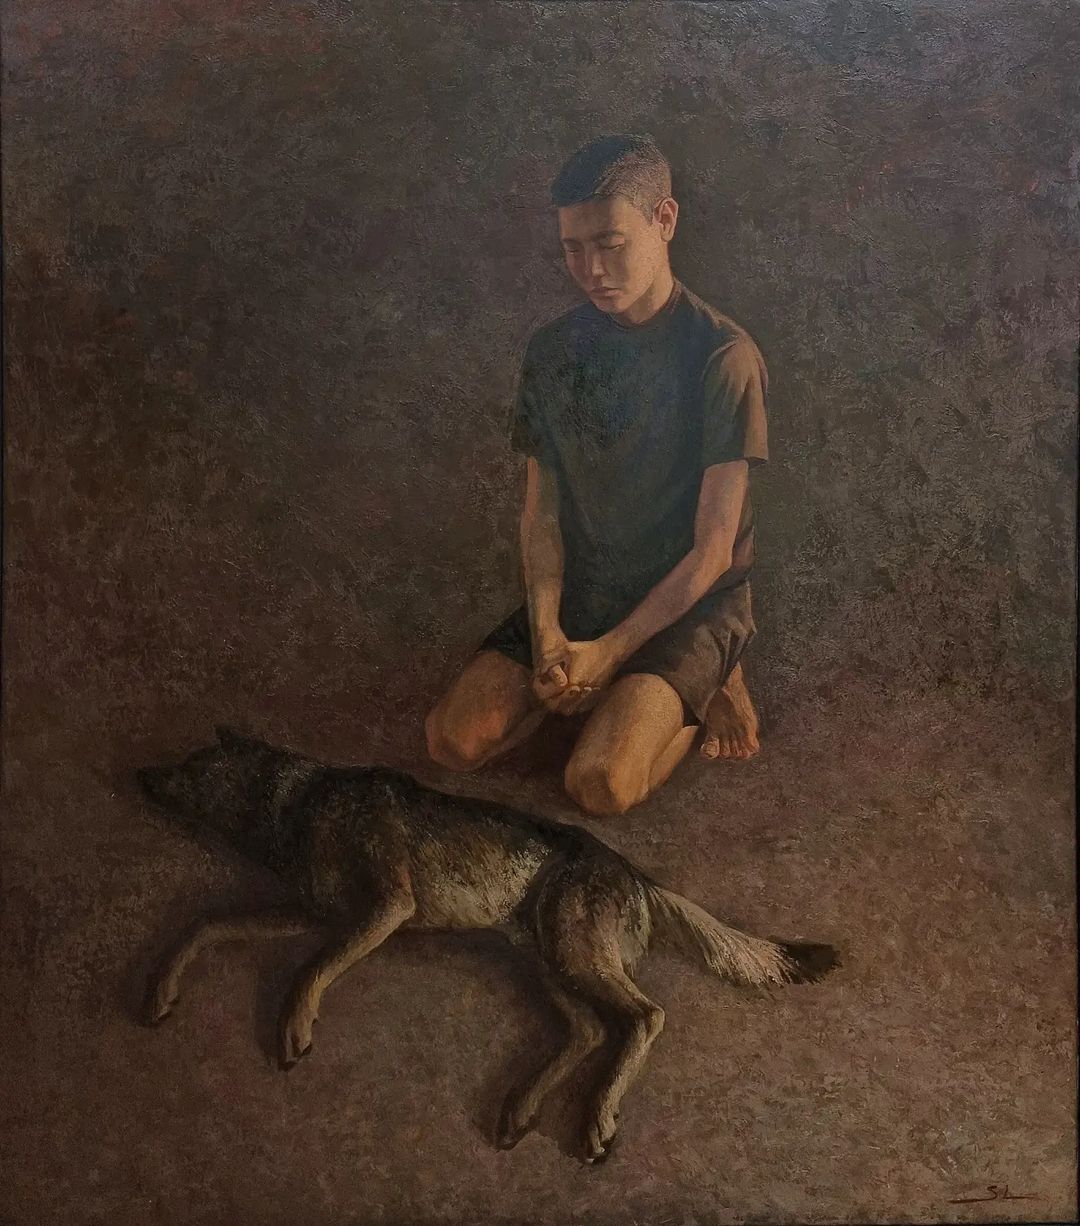 "Отец сказал, пора от собаки избавляться". Якутский художник рассказал грустную историю о своем пушистом друге детства